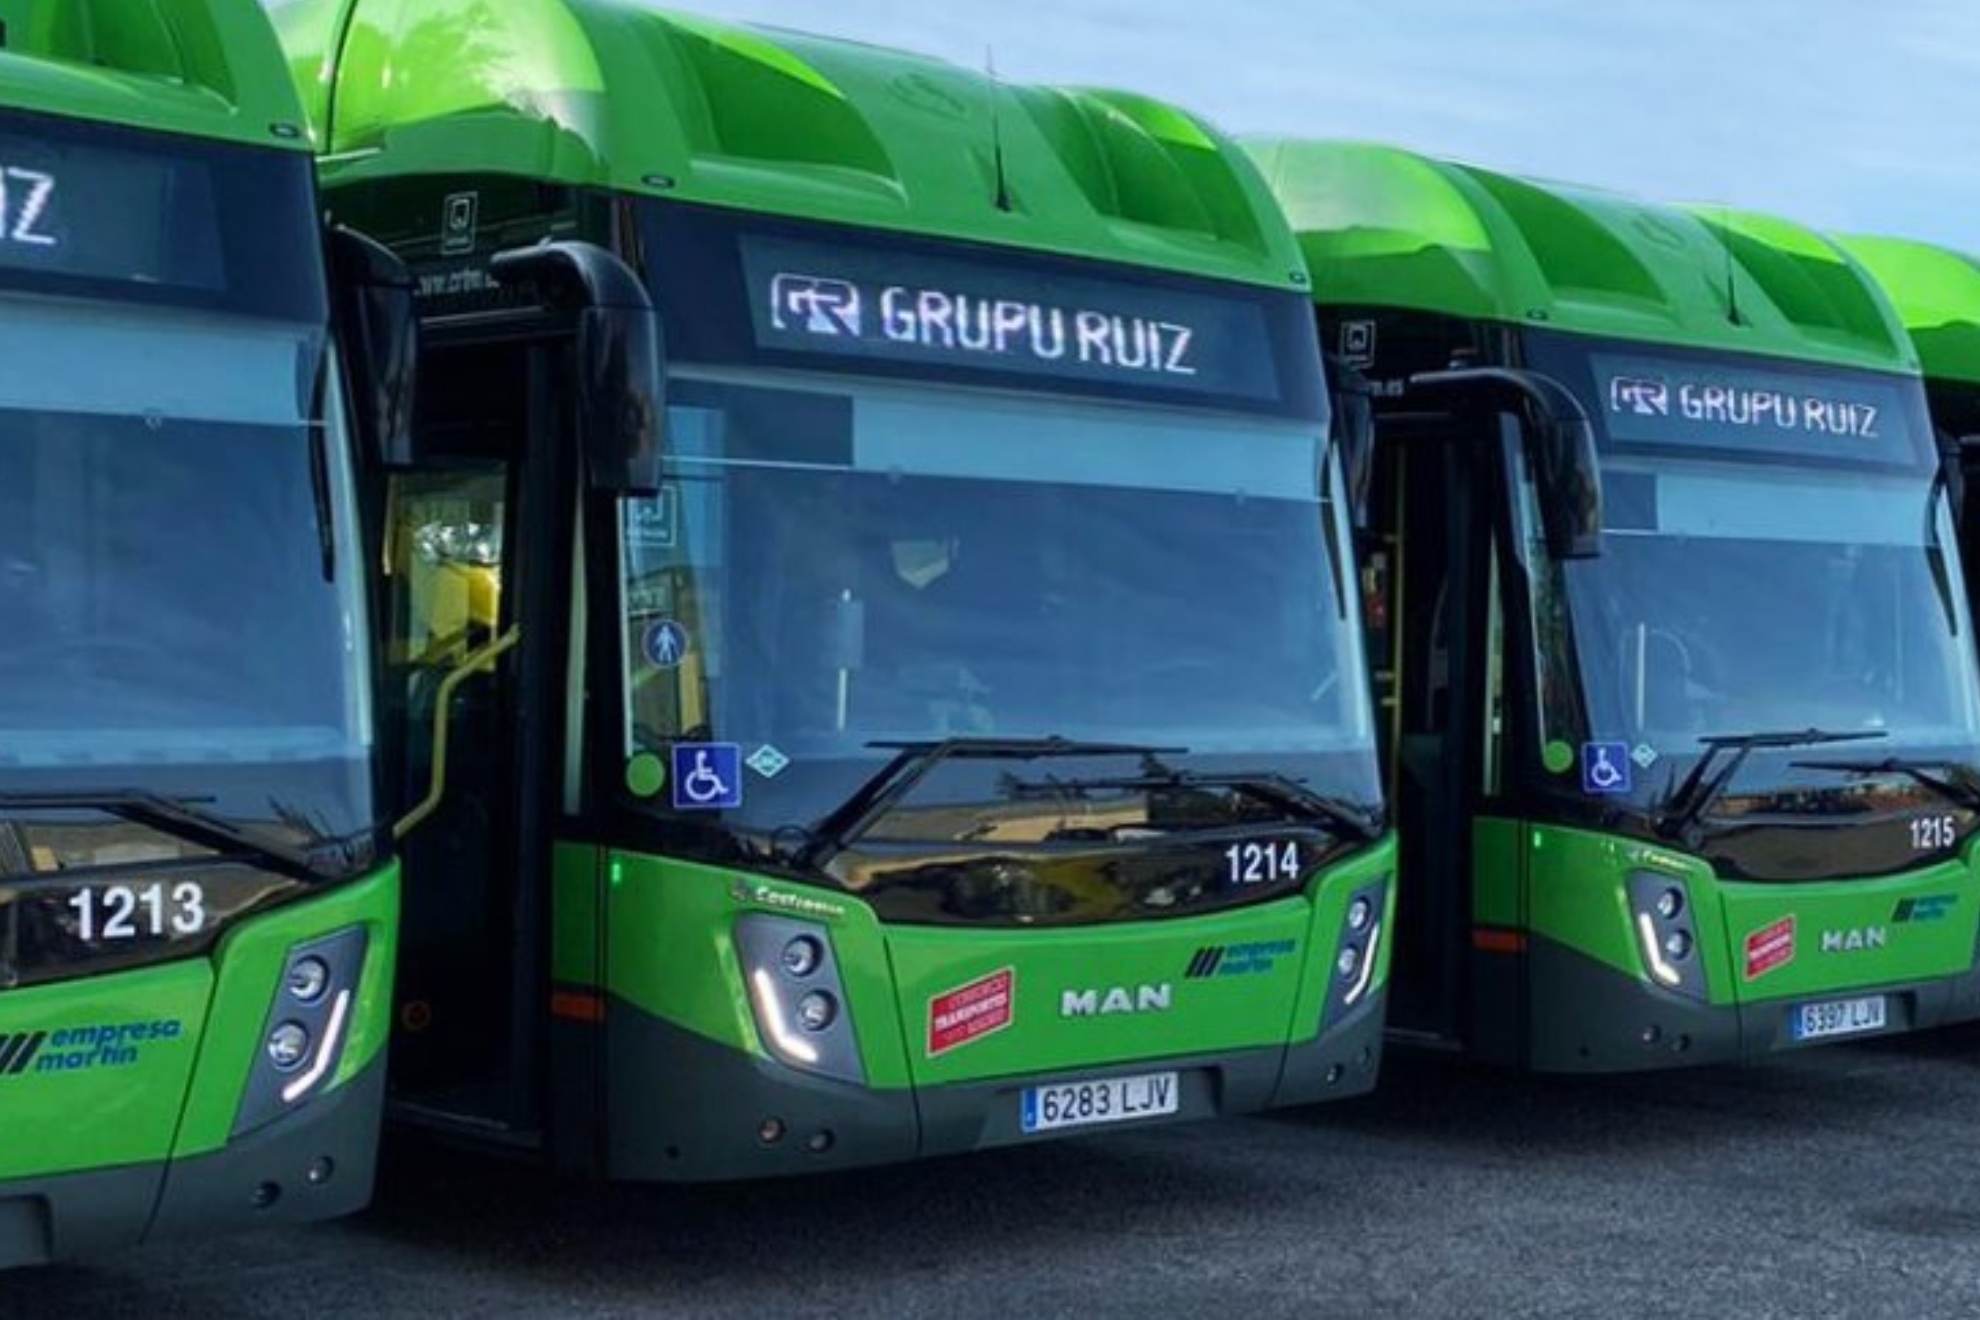 Autobuses de la empresa Martn